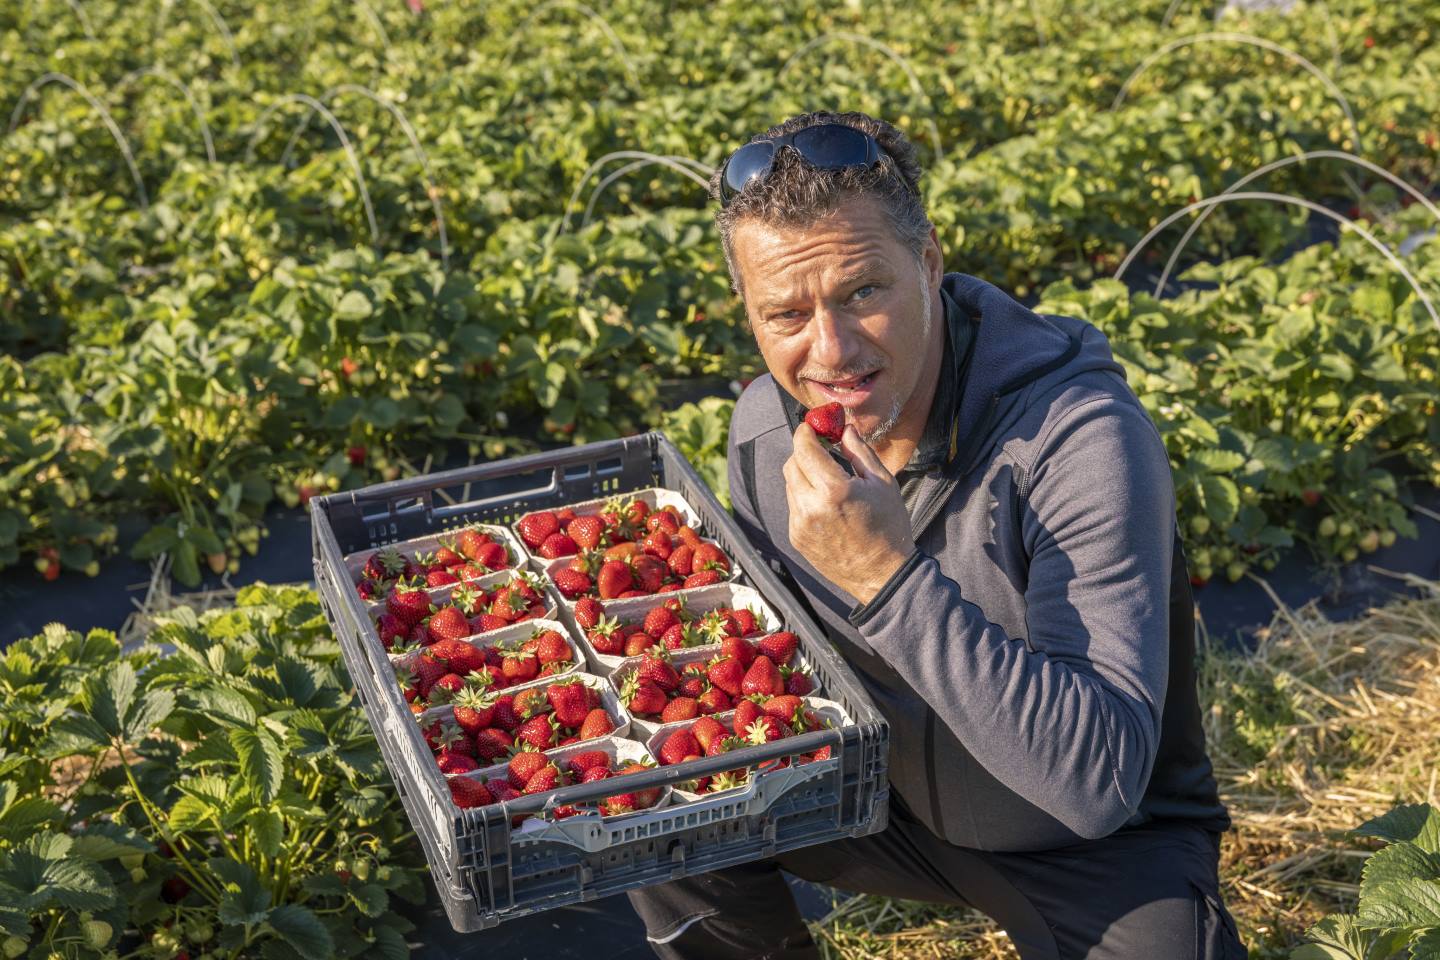 Wolfgang Karg Verköstigt Eine Seiner Ländle Erdbeeren, Außerdem Hält Er Eine Kiste Voller Erdbeeren In Seiner Hand